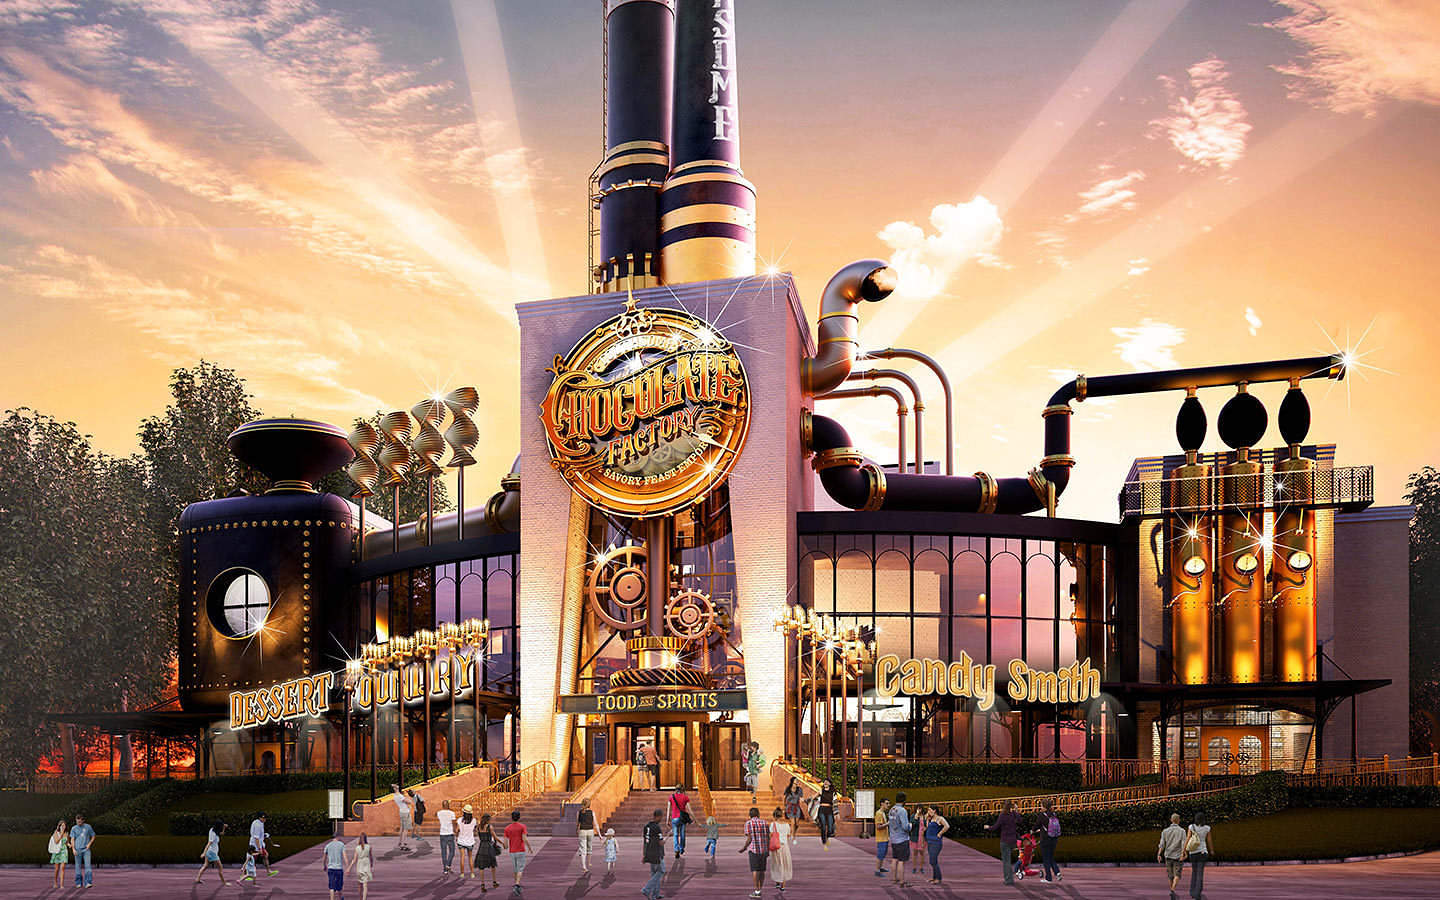 Universal Orlando abre su propia fábrica de chocolate a finales de este año